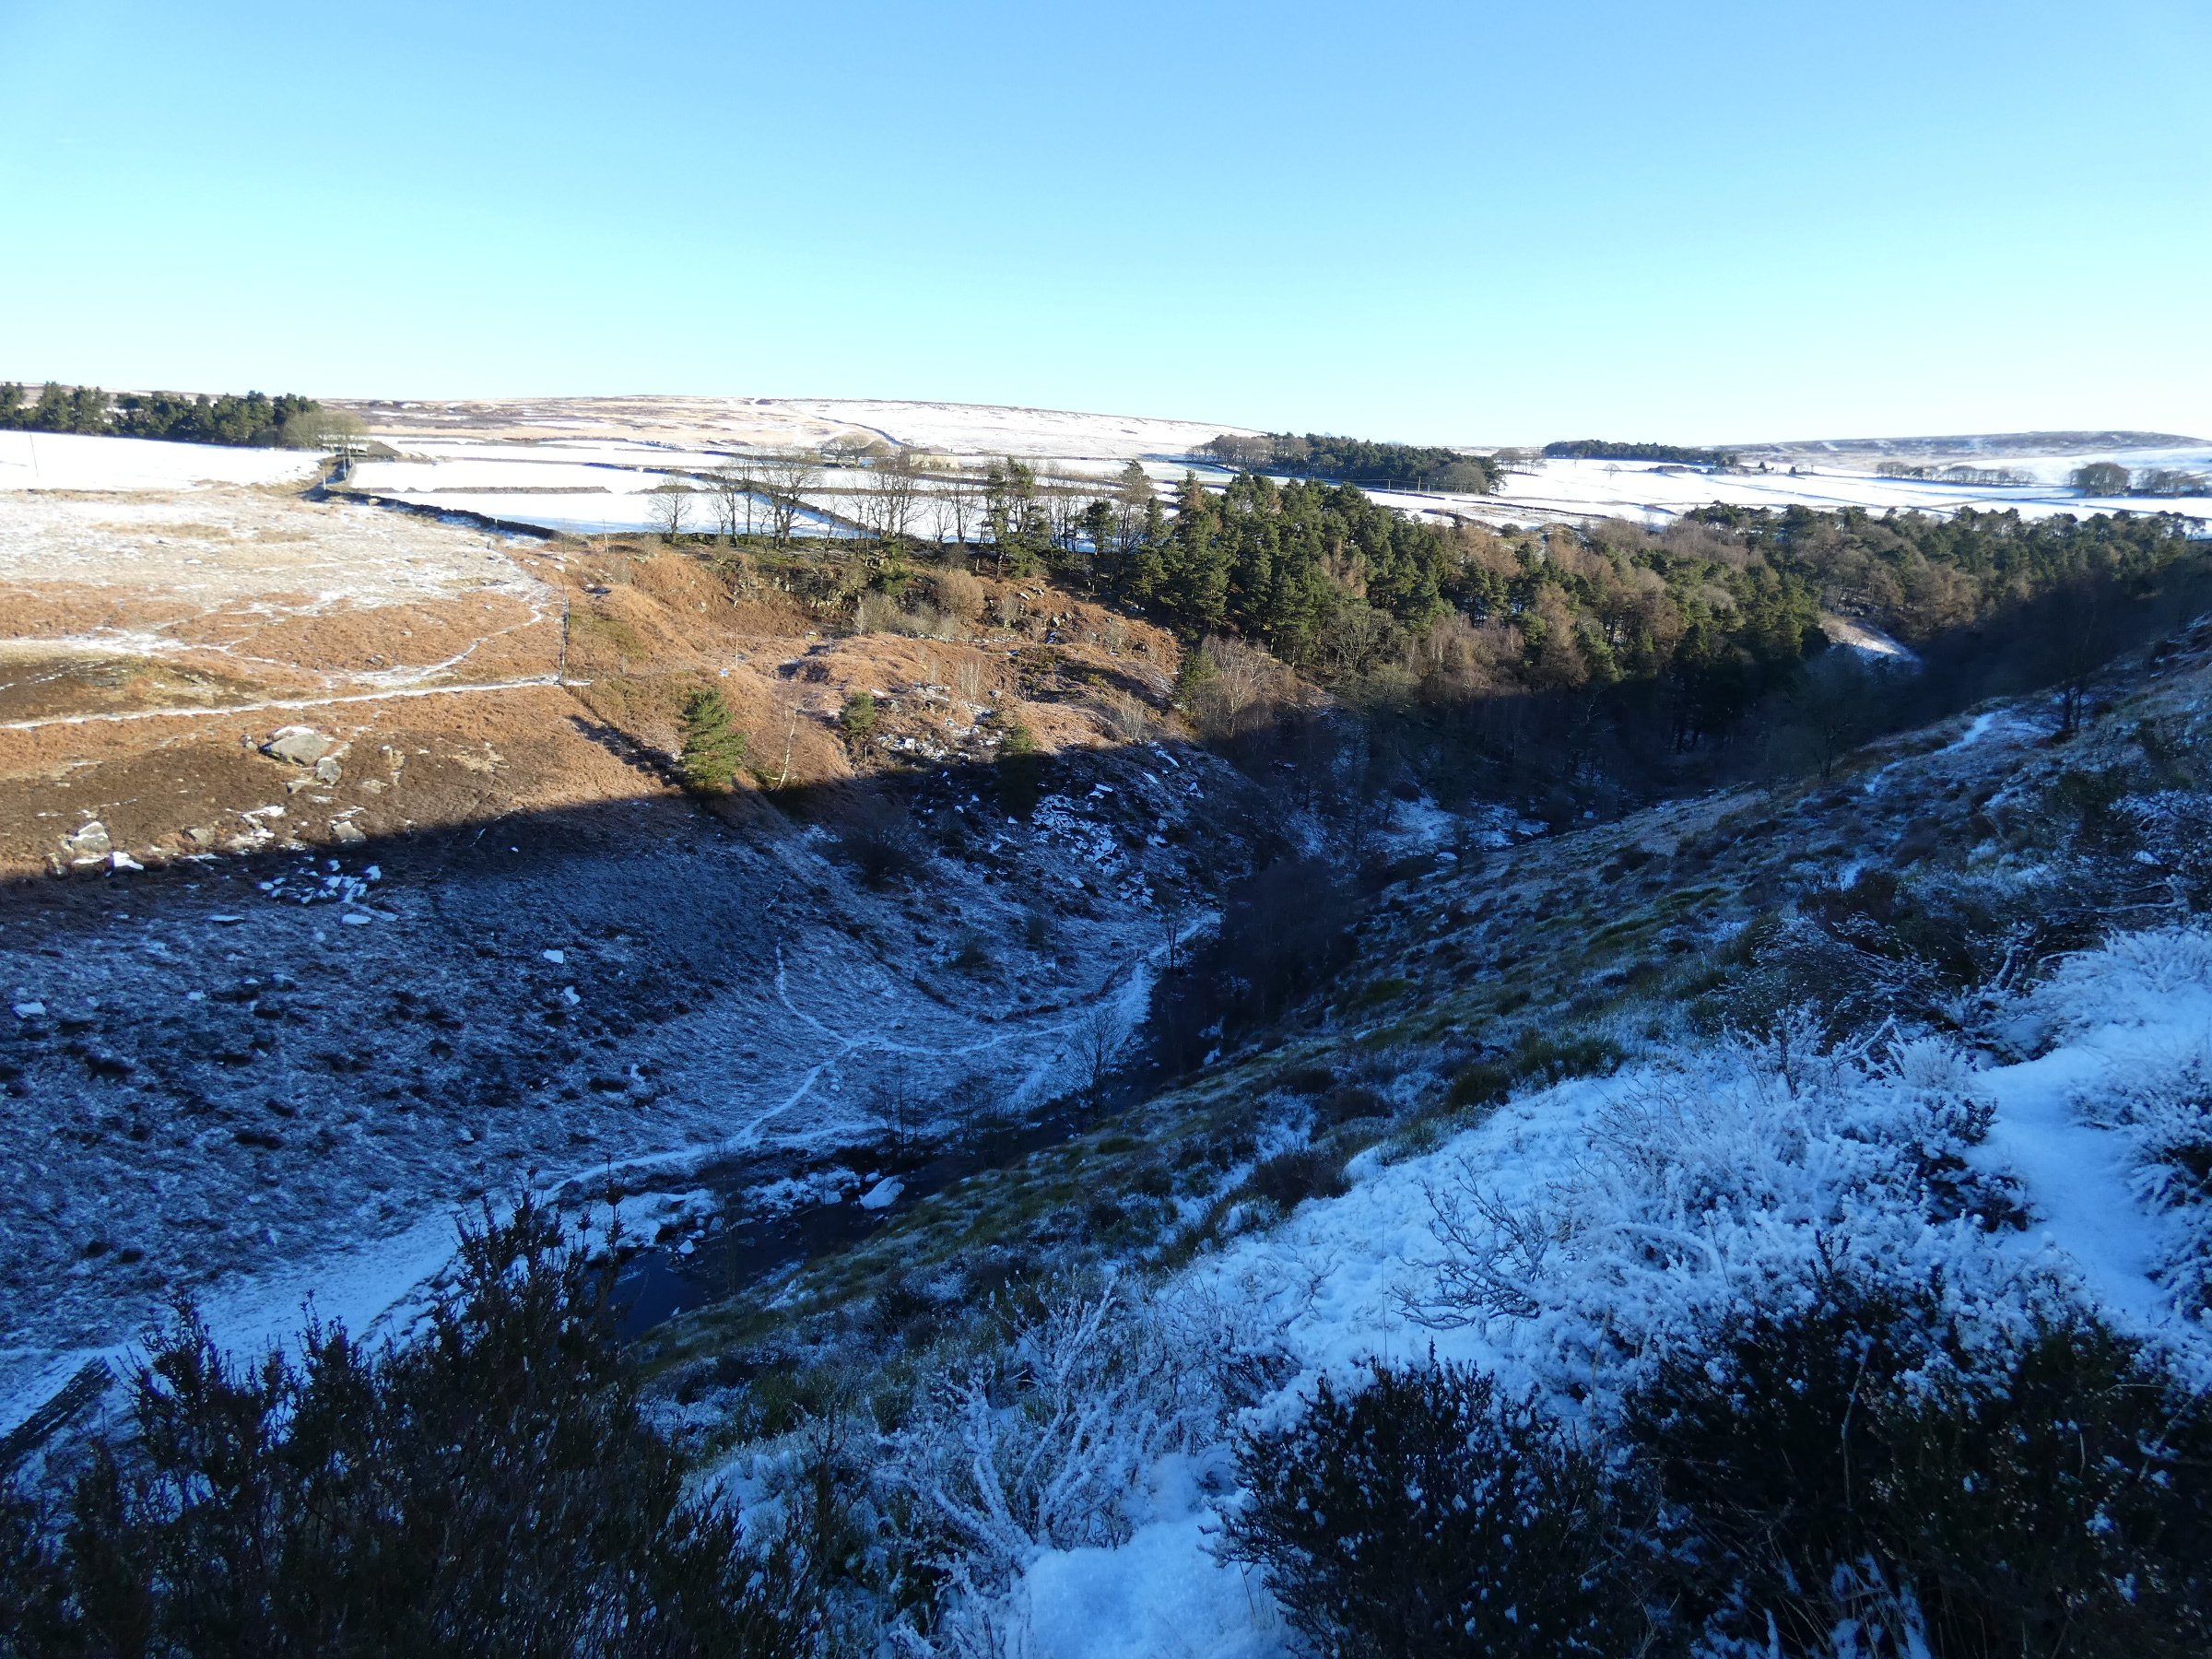 View from Widdop Gate across Hardcastle Cragstowards Walshaw Moor